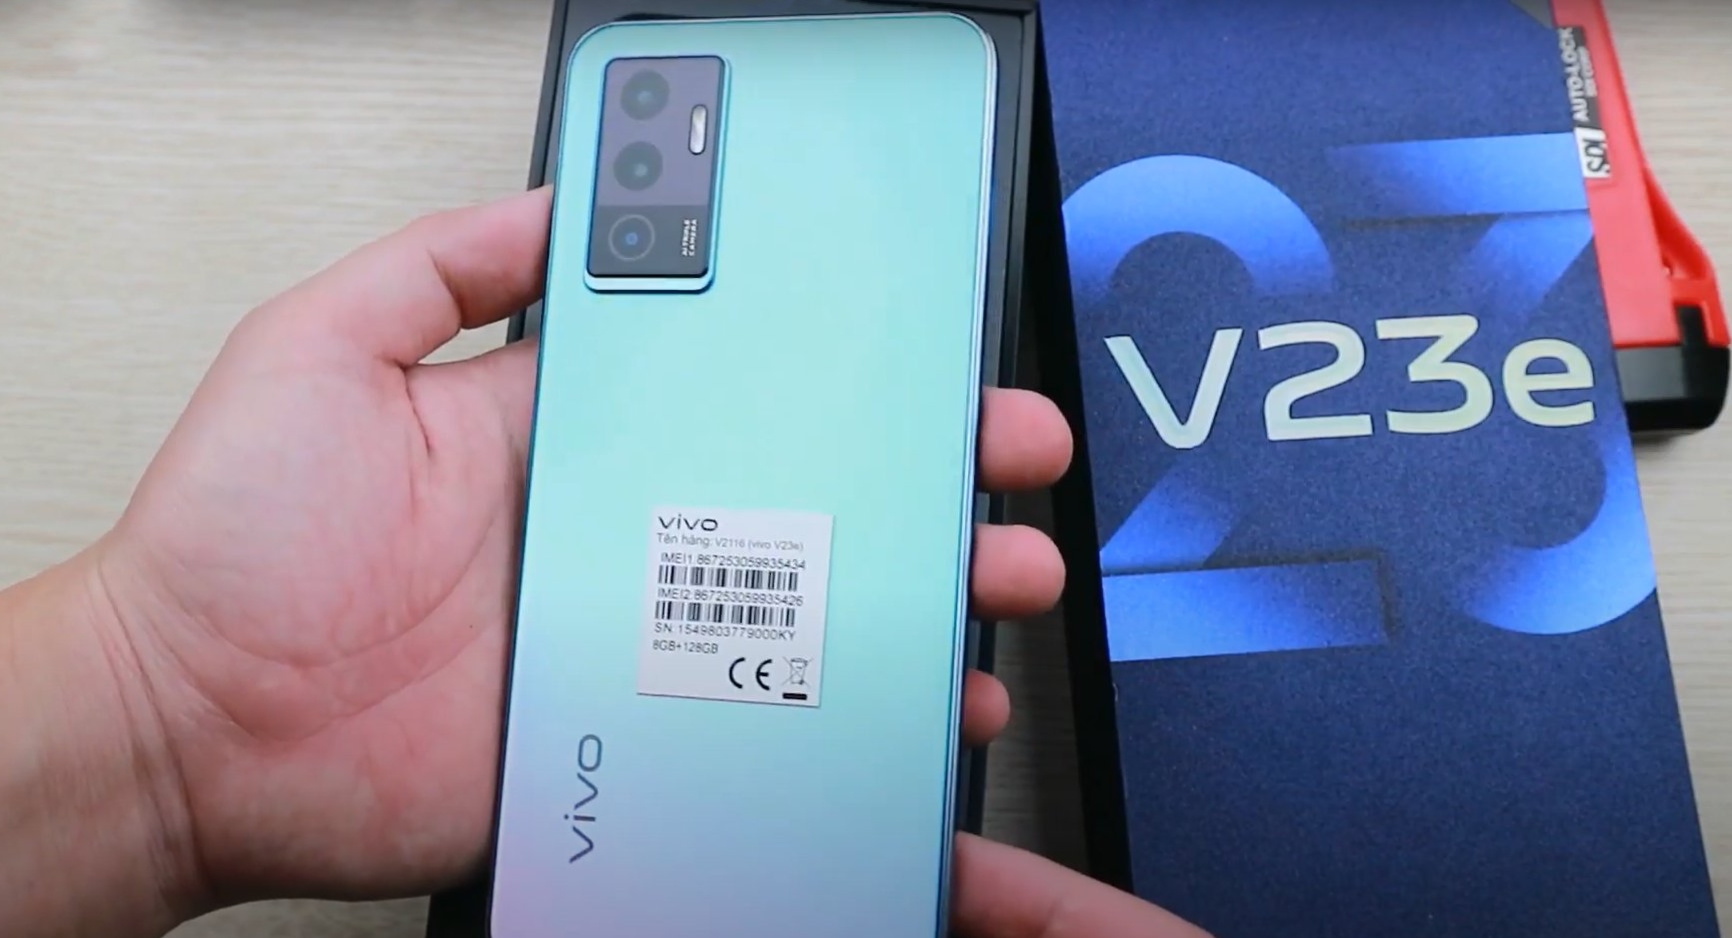 У мережі з'явилися «живі» фотографії та докладні характеристики смартфона Vivo V23e